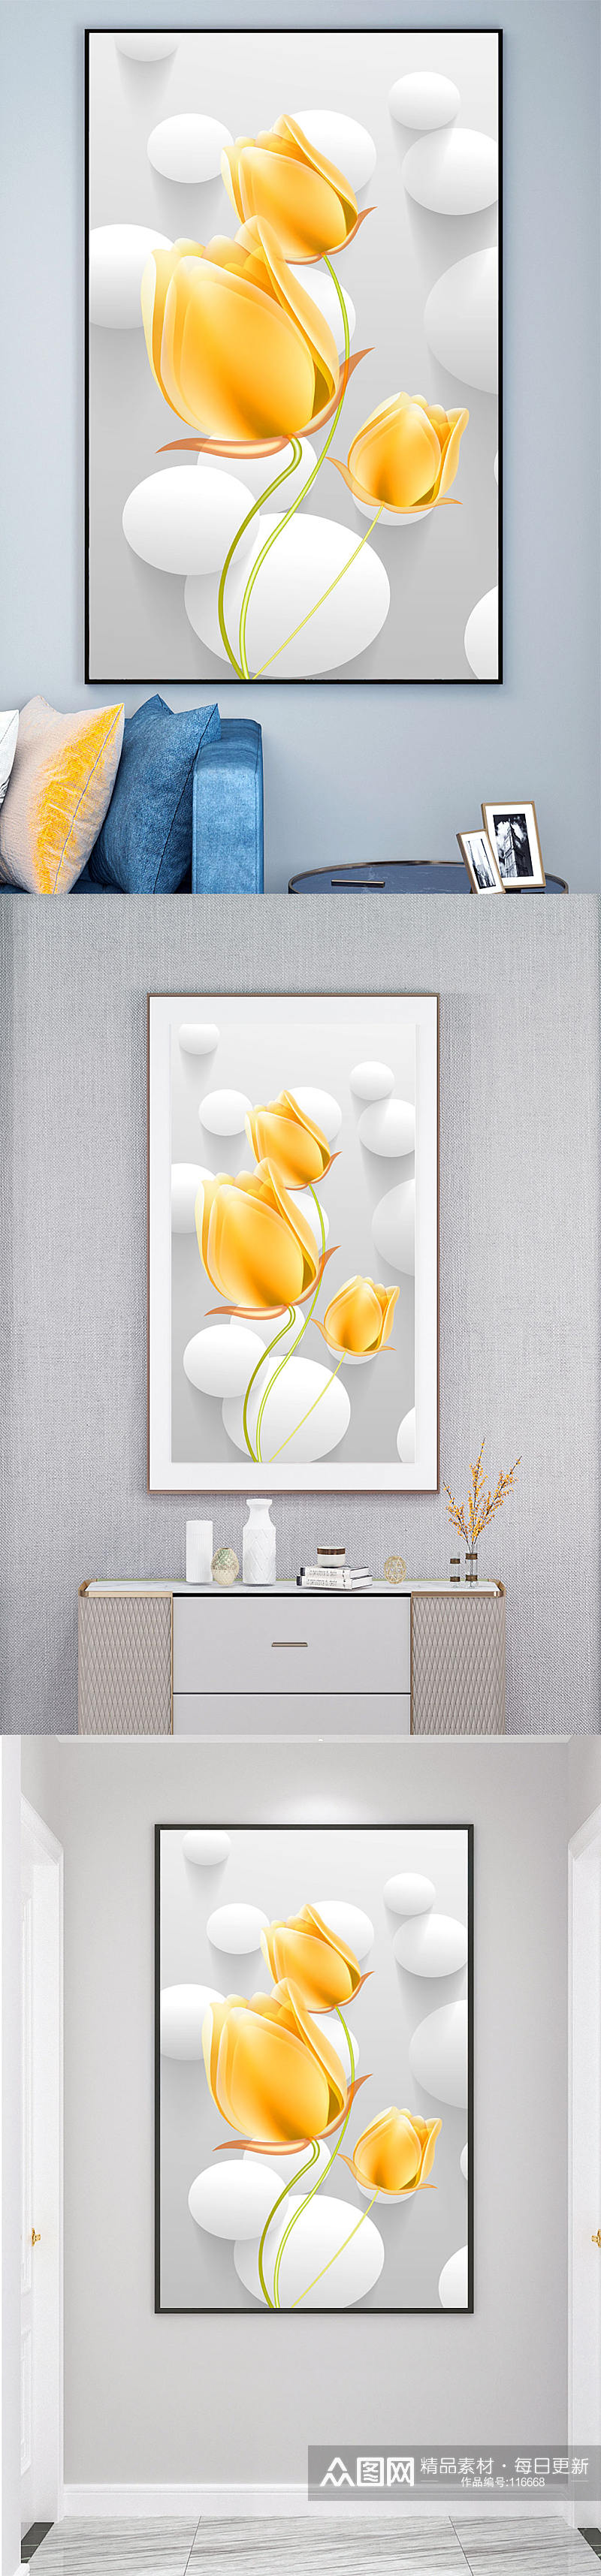 简洁黄色花卉玄关装饰画素材